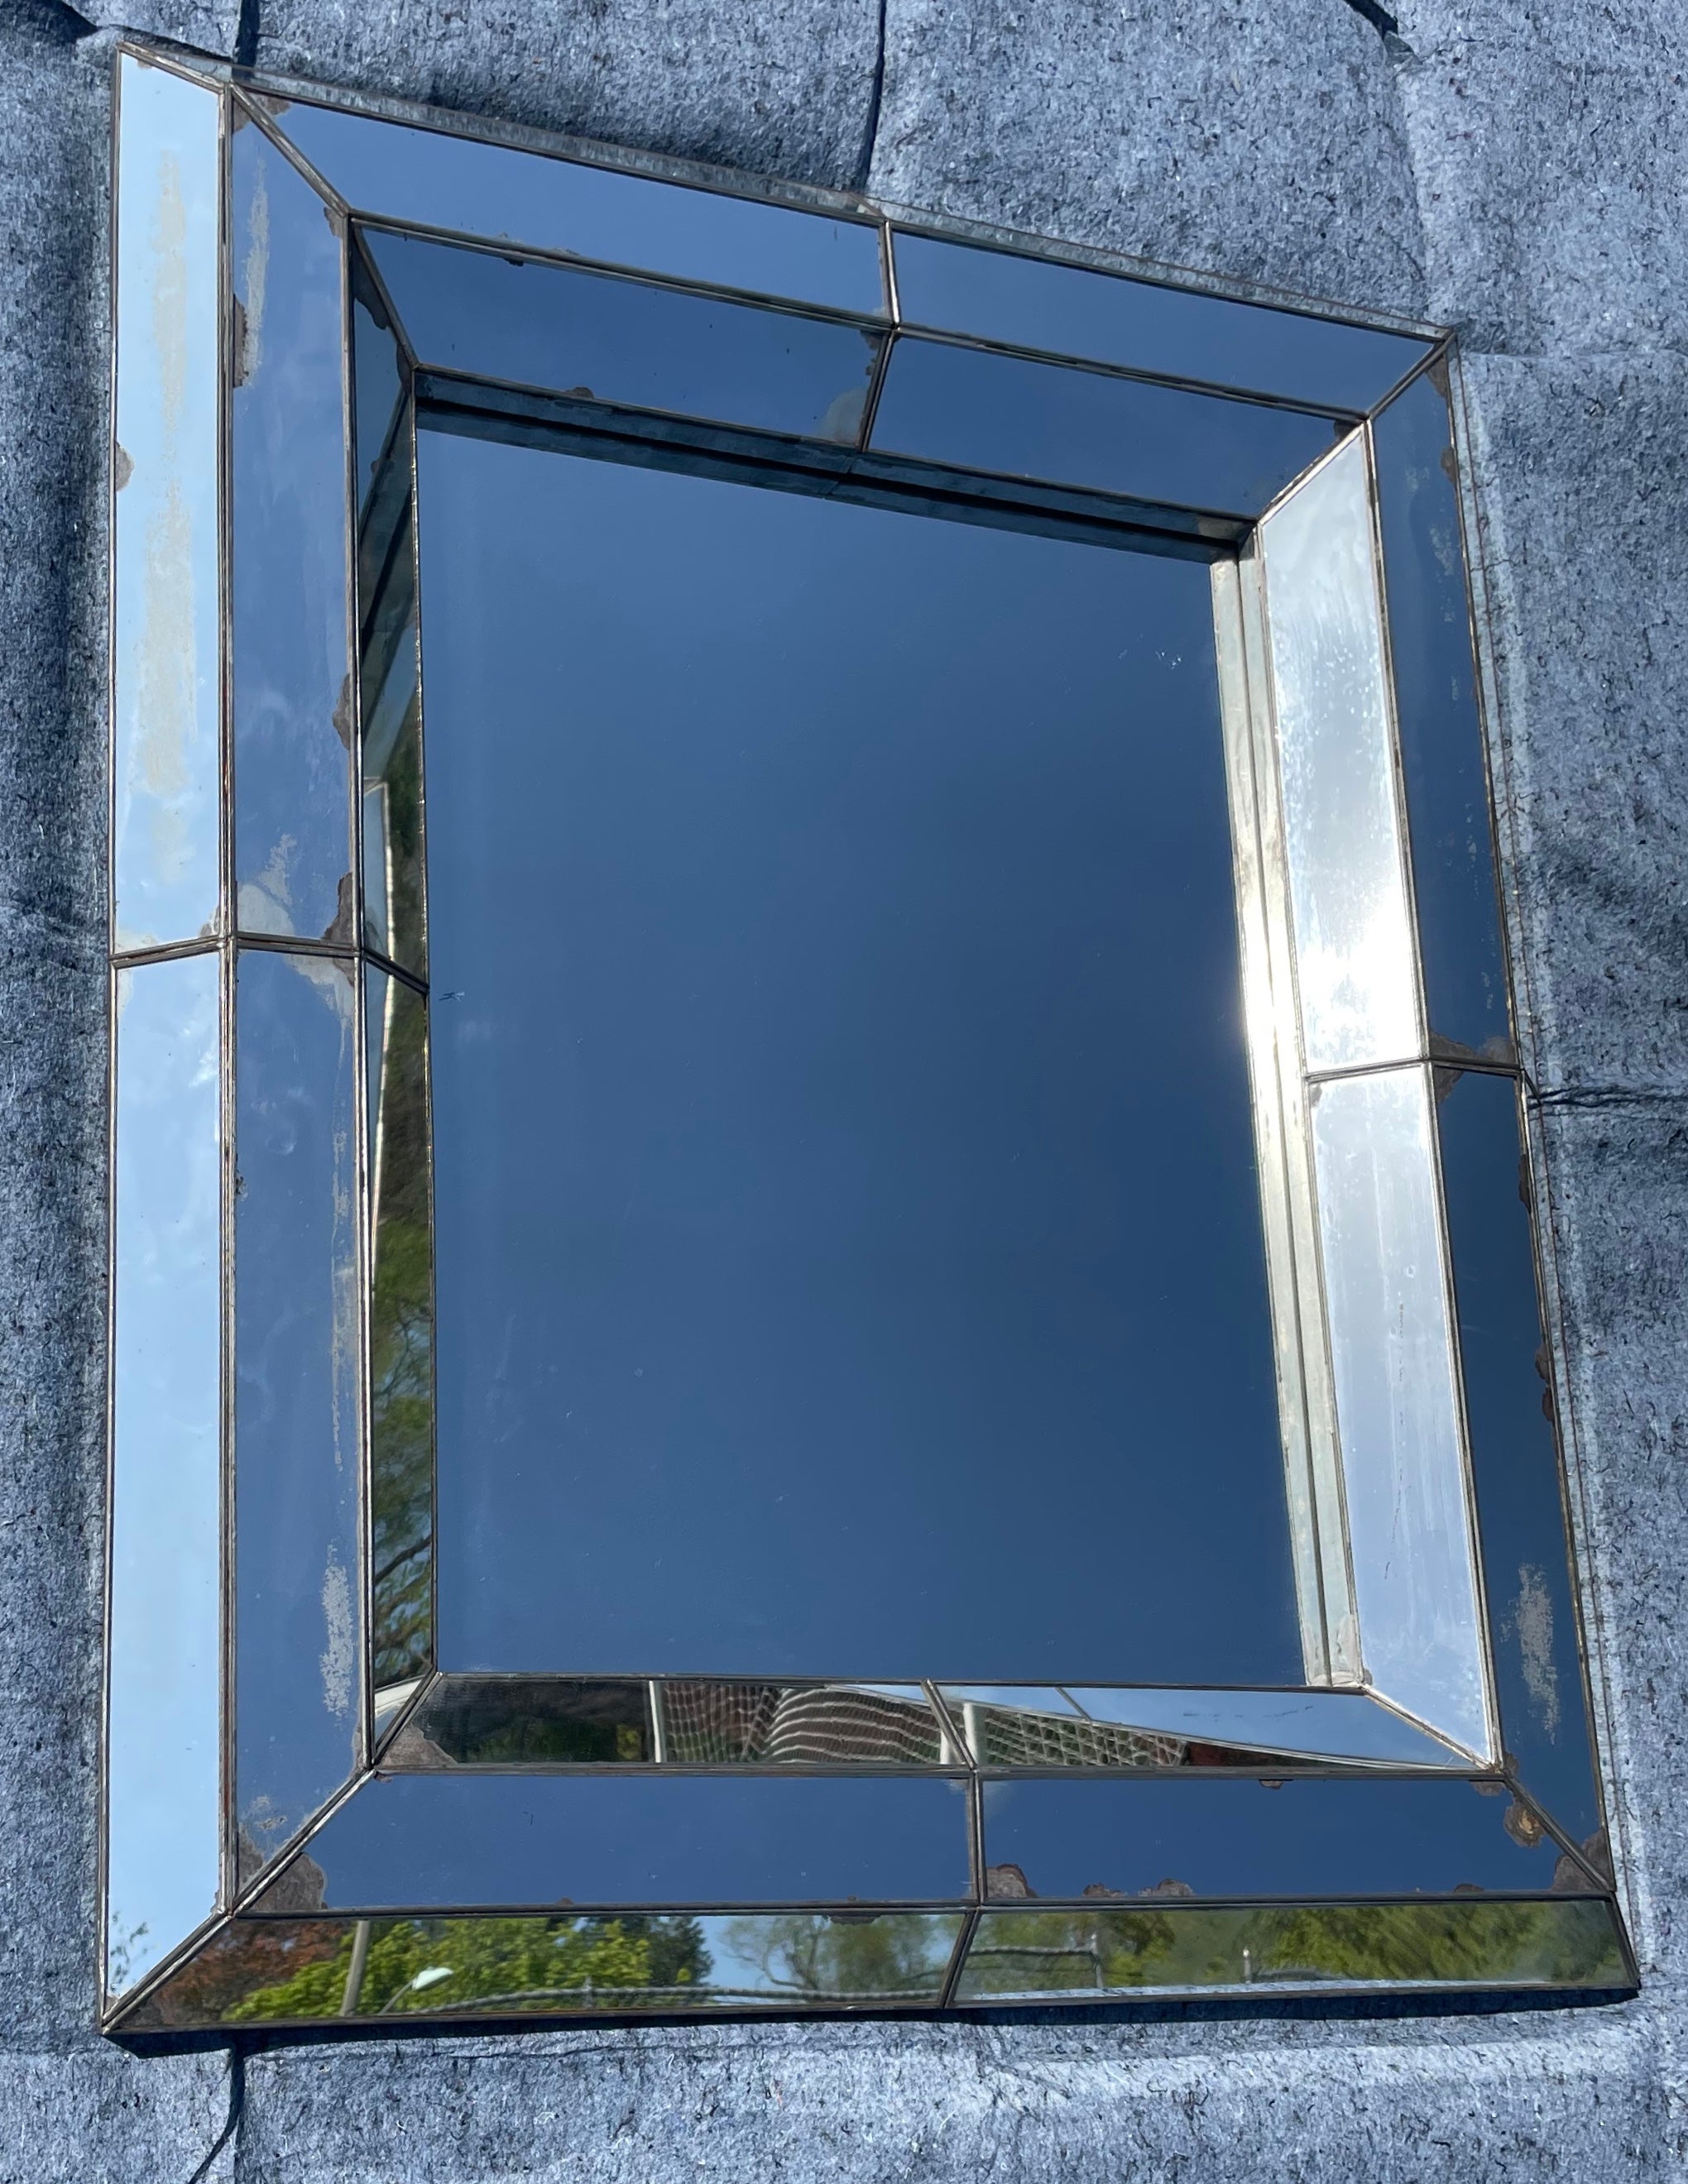 Grand miroir vénitien en verre au mercure. Miroir vénitien vintage encadré en forme de boîte à panneaux avec des pertes aléatoires au mercure ; élégant à la fois dans des cadres continentaux charmants et modernes. Espagne, milieu du 20e